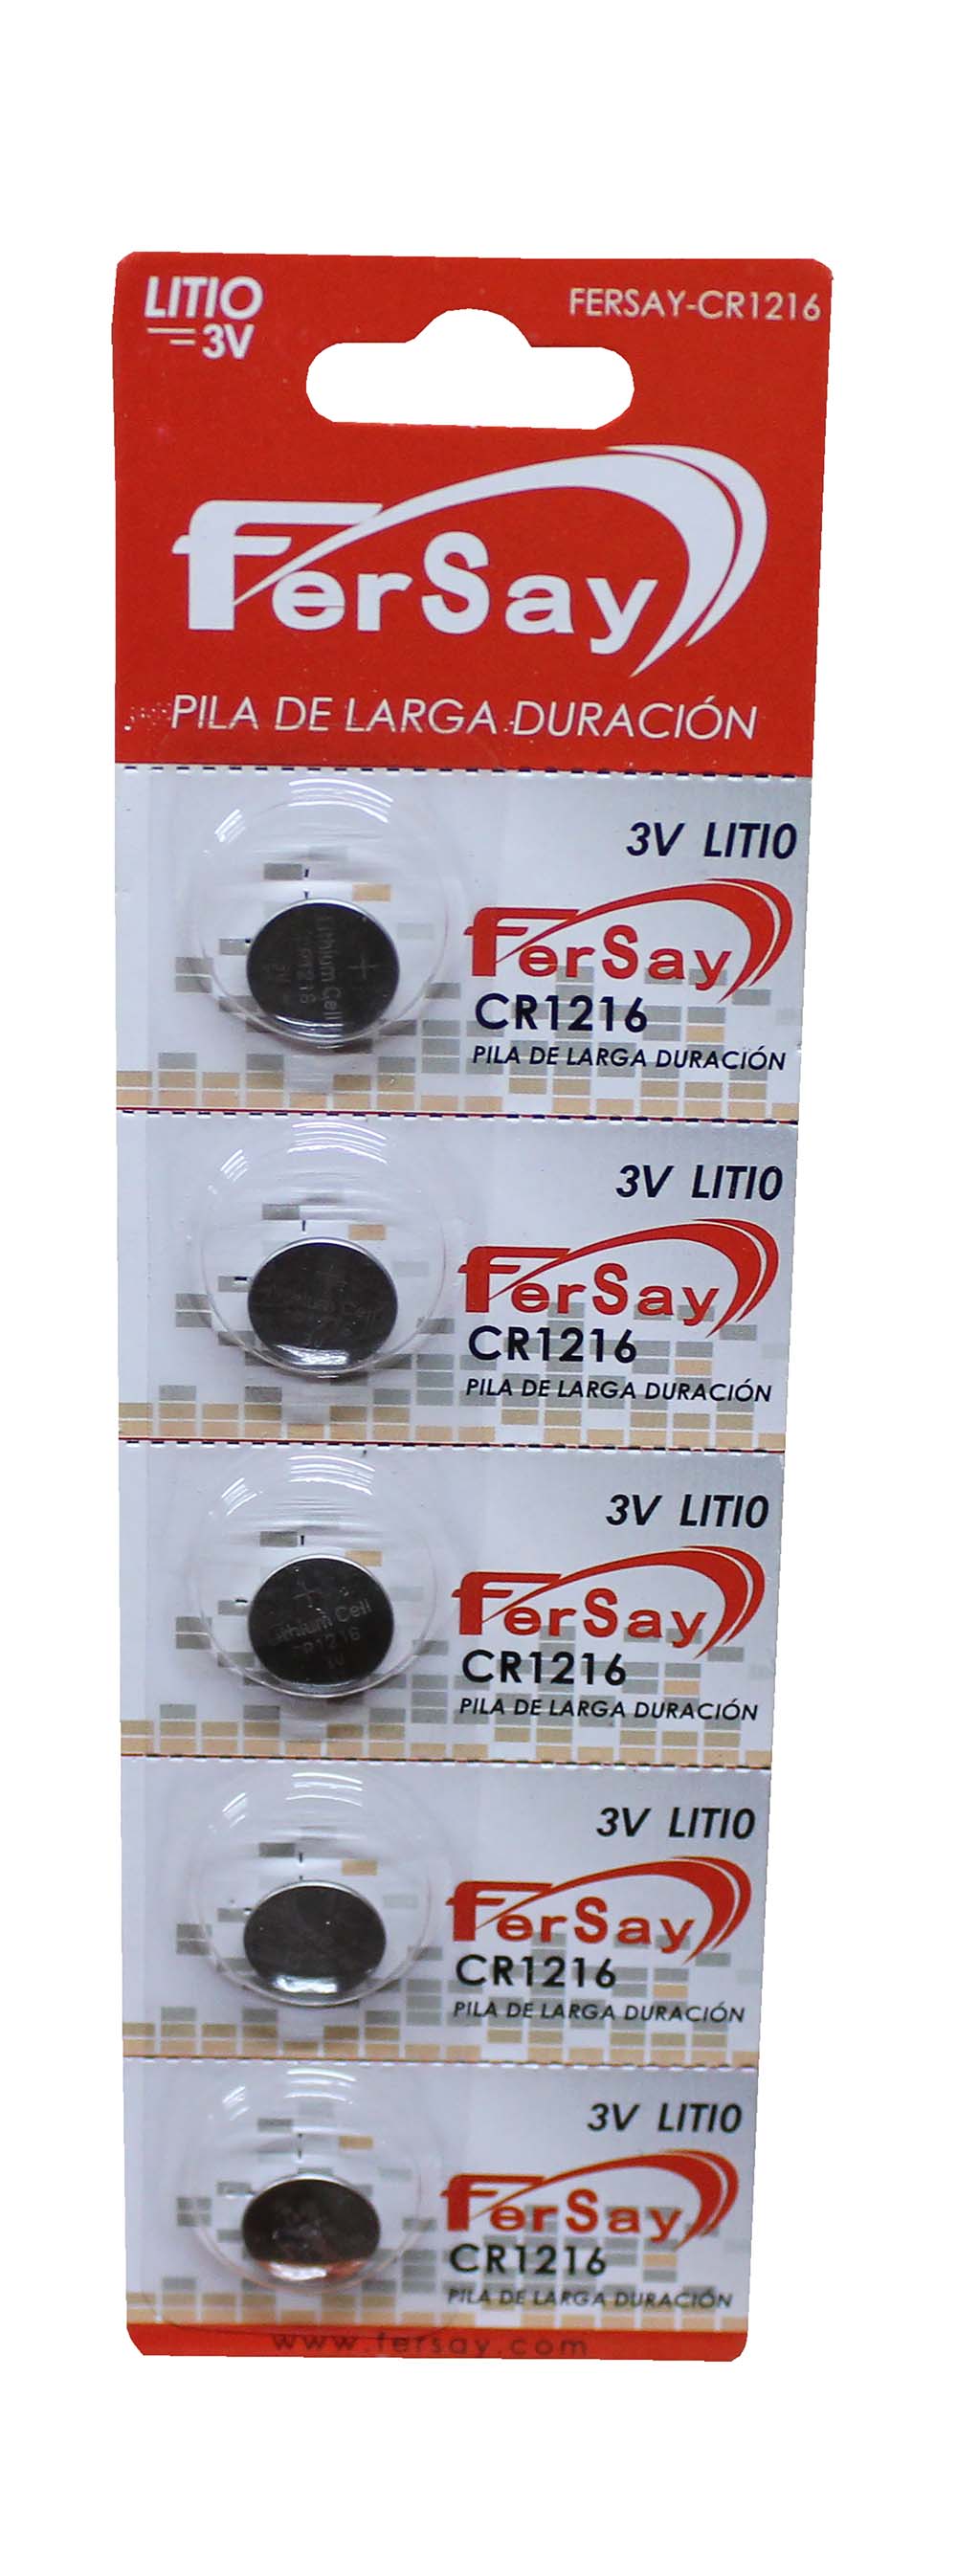 Pila litio botón formato CR1216 Fersay, 5 unidades. - FERSAYCR1216 - FERSAY